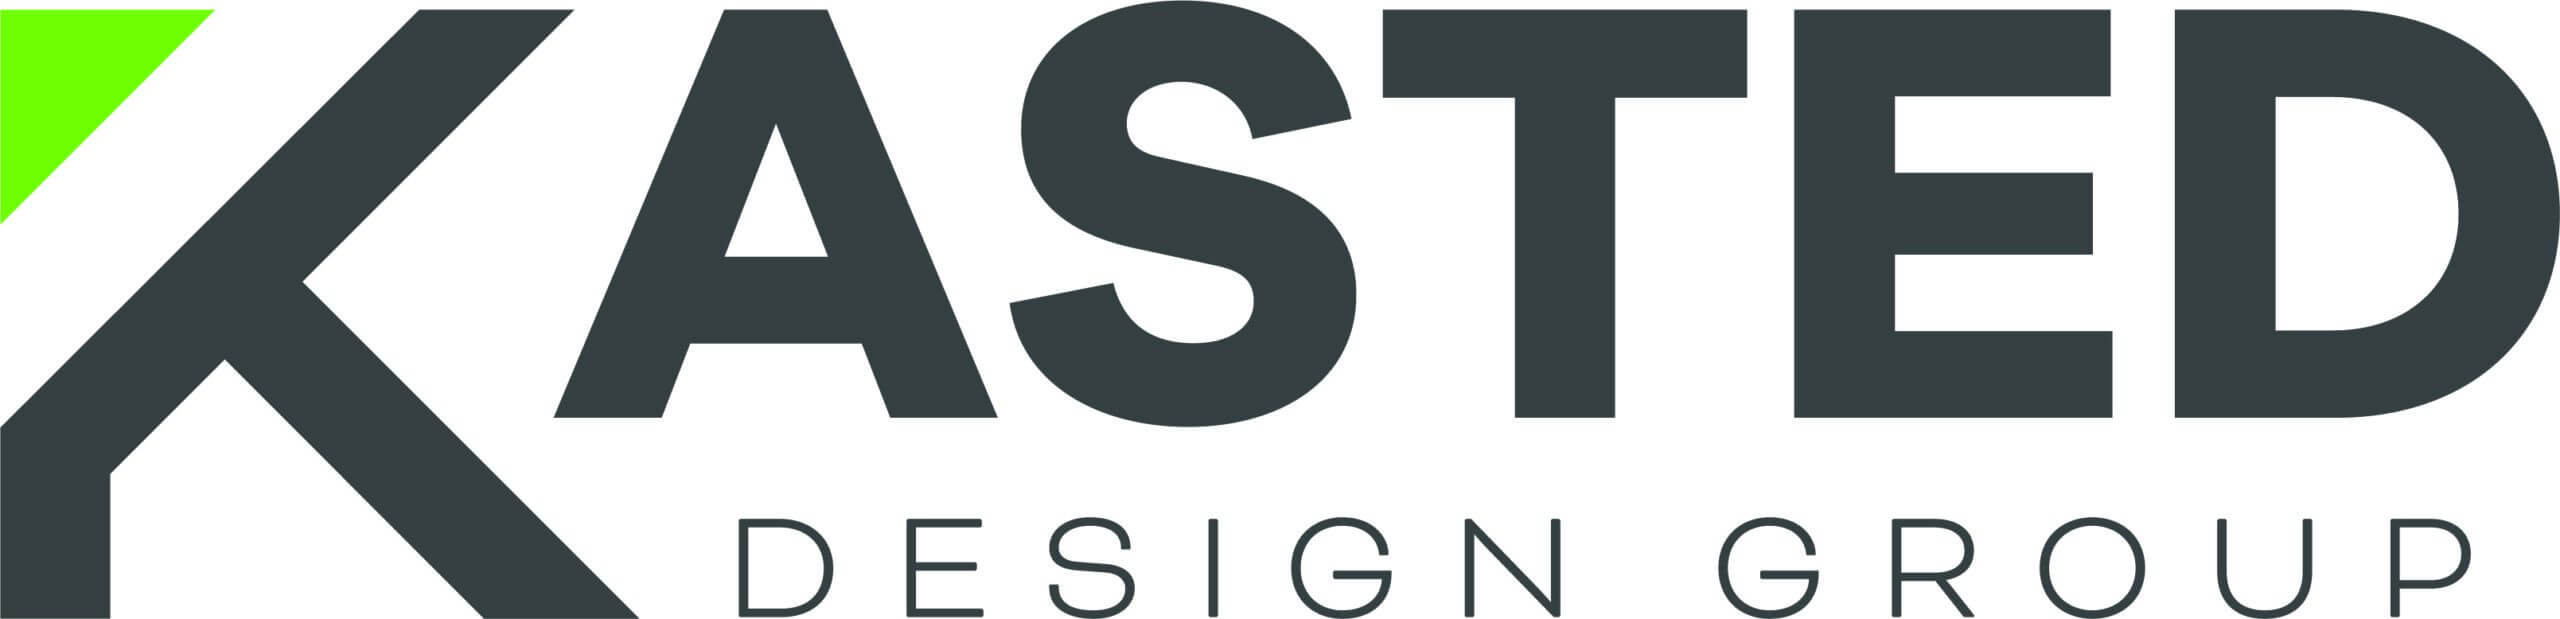 Kasted Design Group